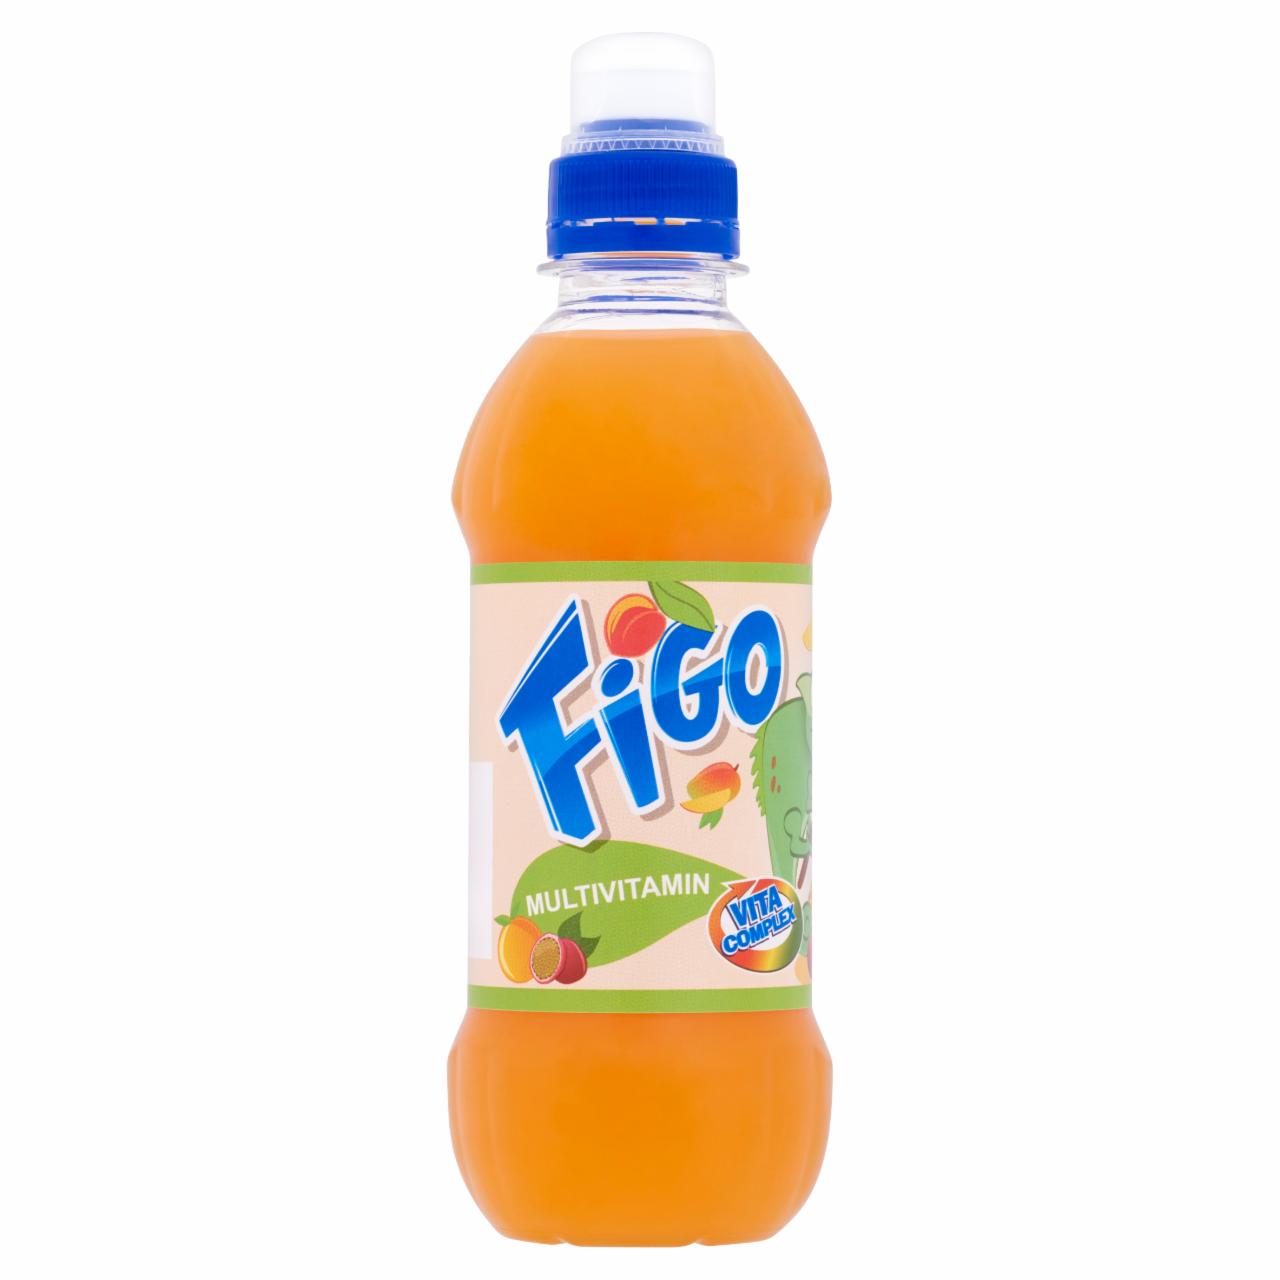 Képek - Figo multivitamin rostos vegyes gyümölcsital 300 ml